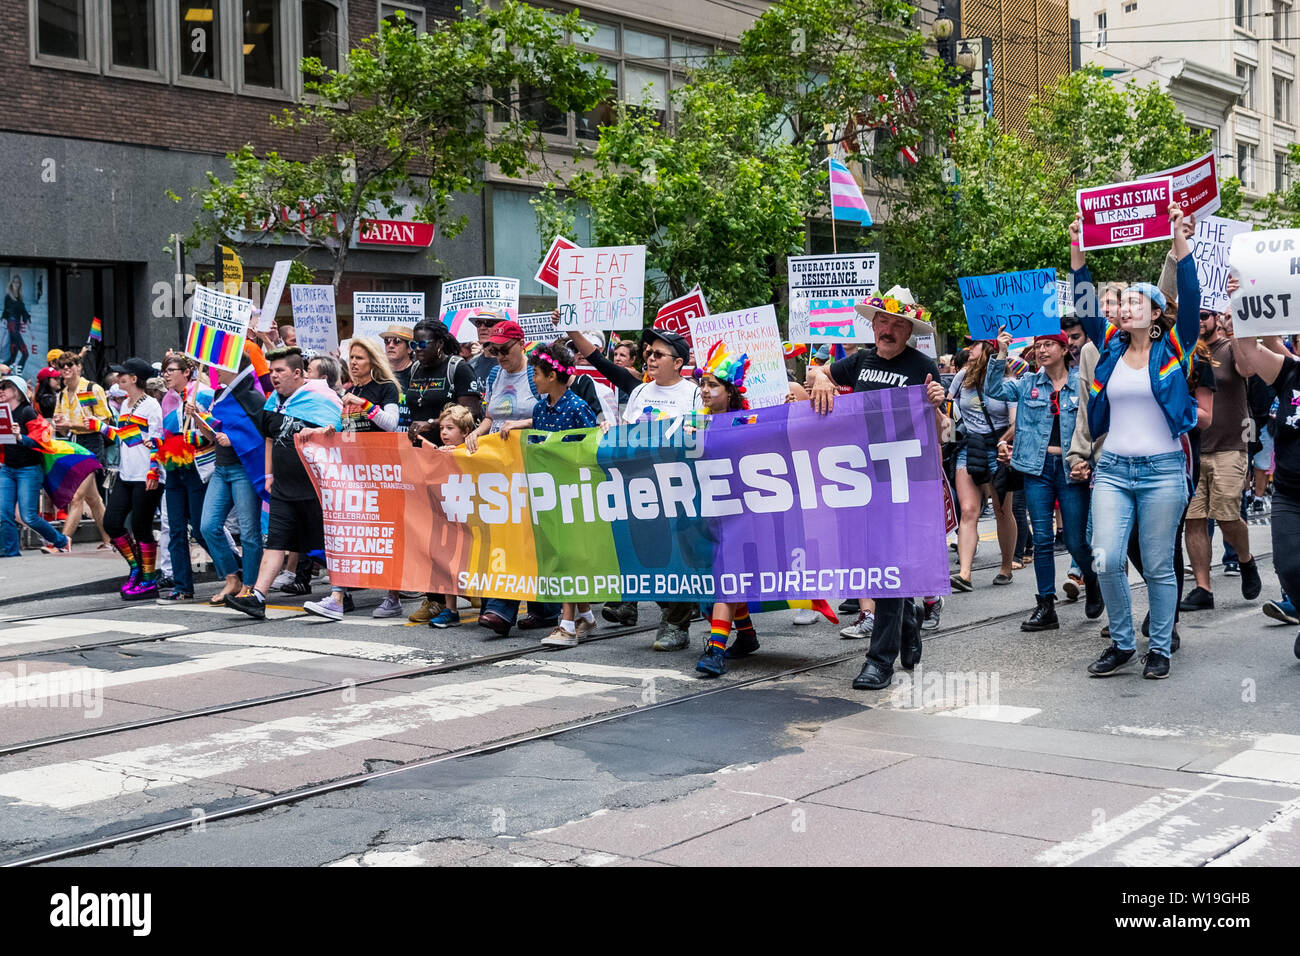 Le 30 juin 2019 San Francisco / CA / USA - Les participants à la 2019 San Francisco Pride Parade portant un n° SFPrideResist sign Banque D'Images